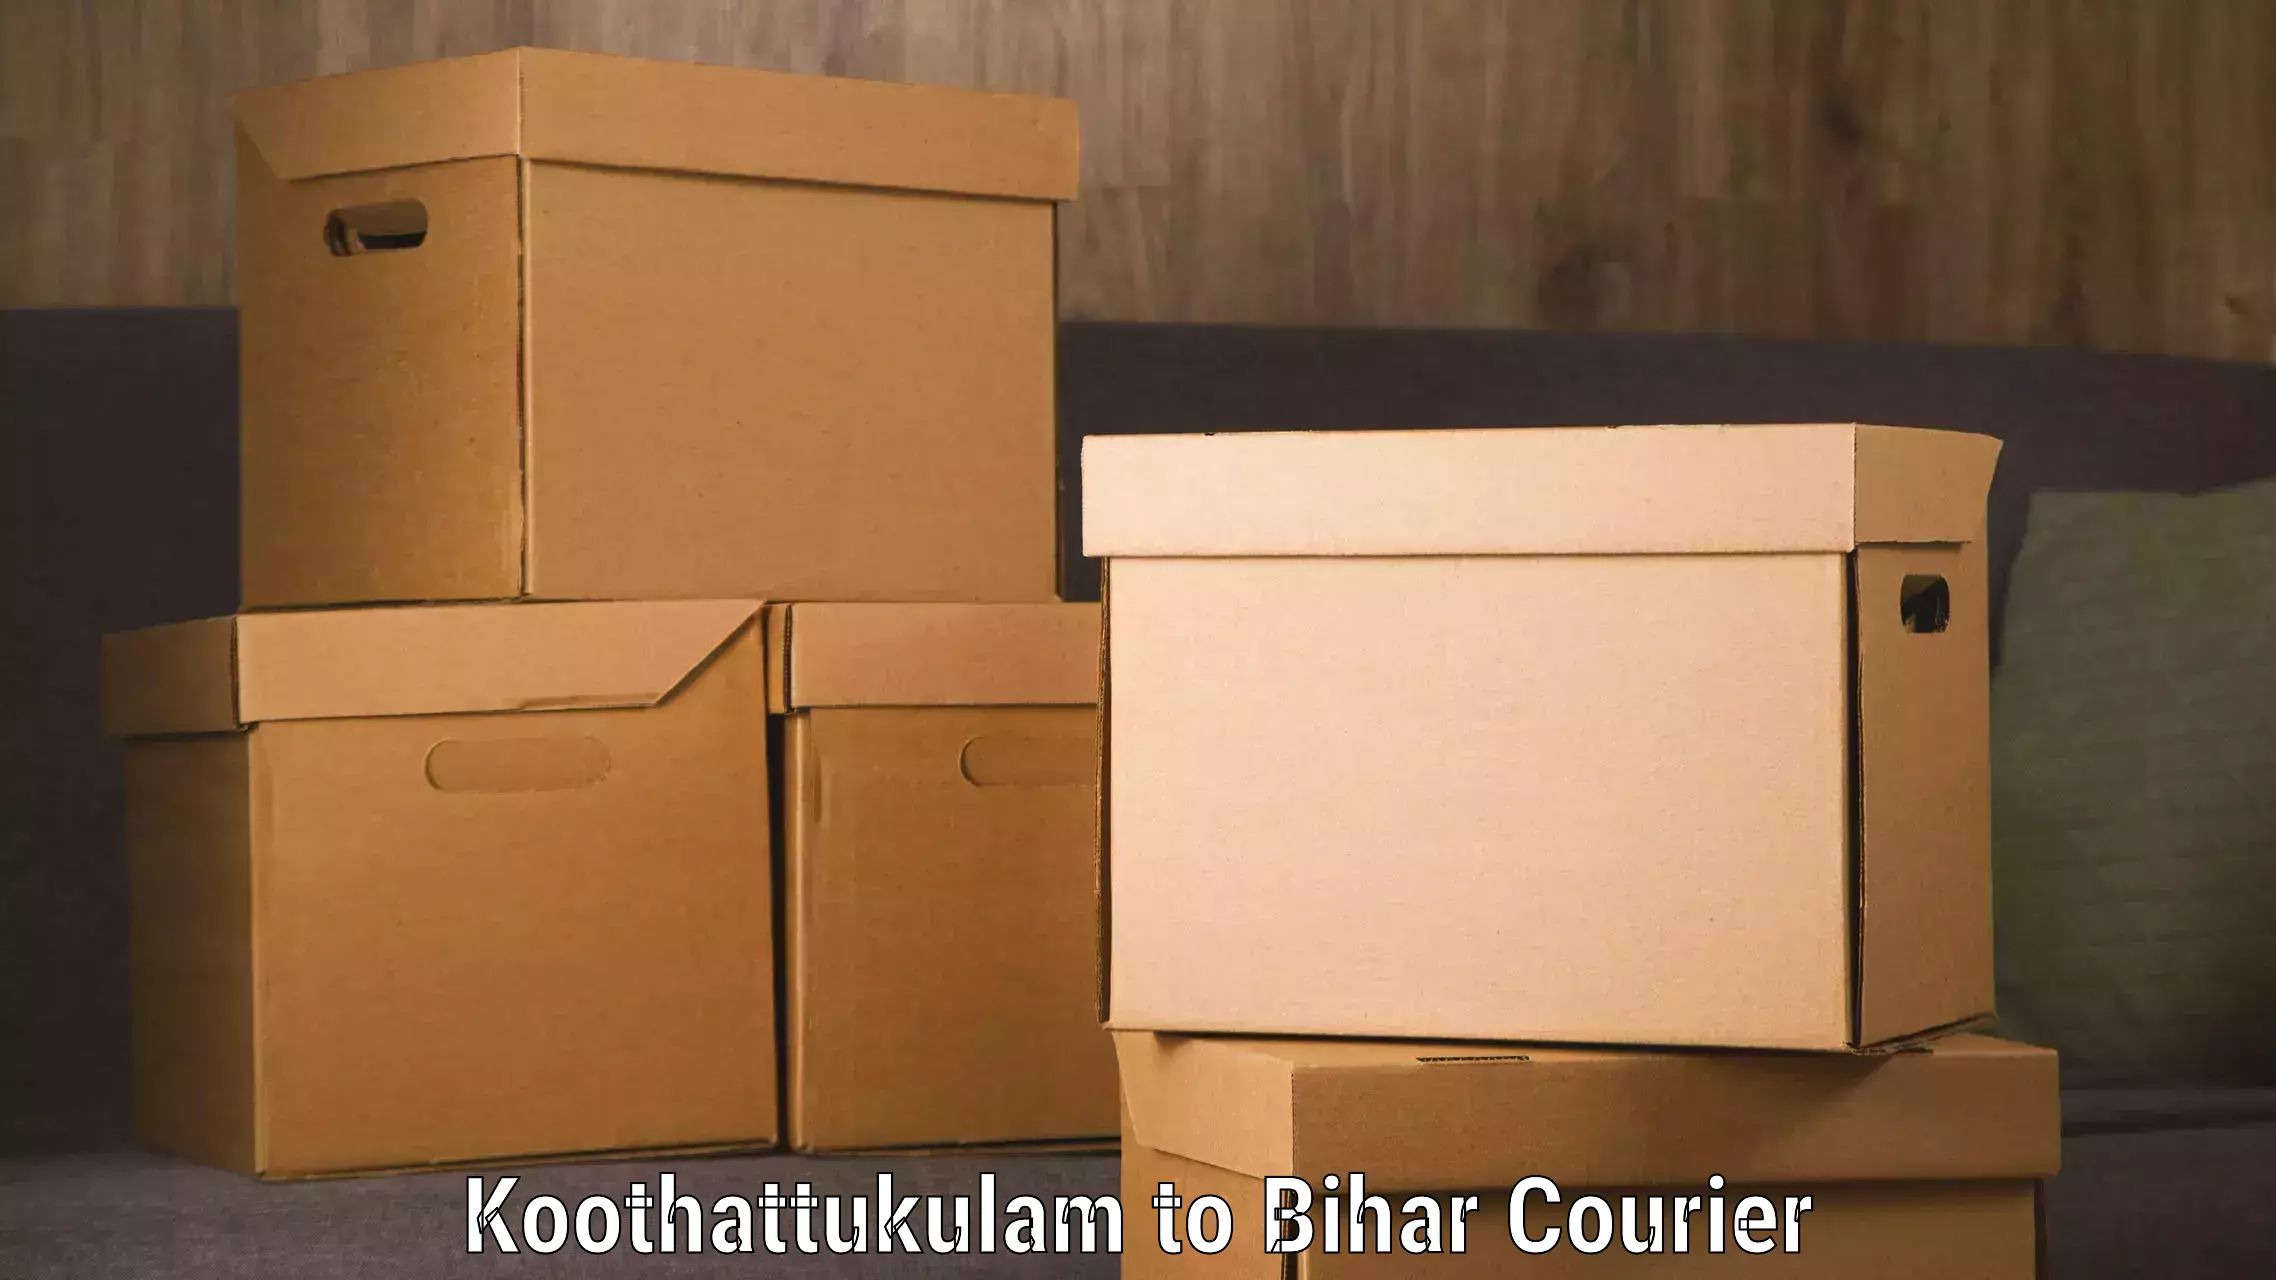 Multi-service courier options Koothattukulam to Barhiya